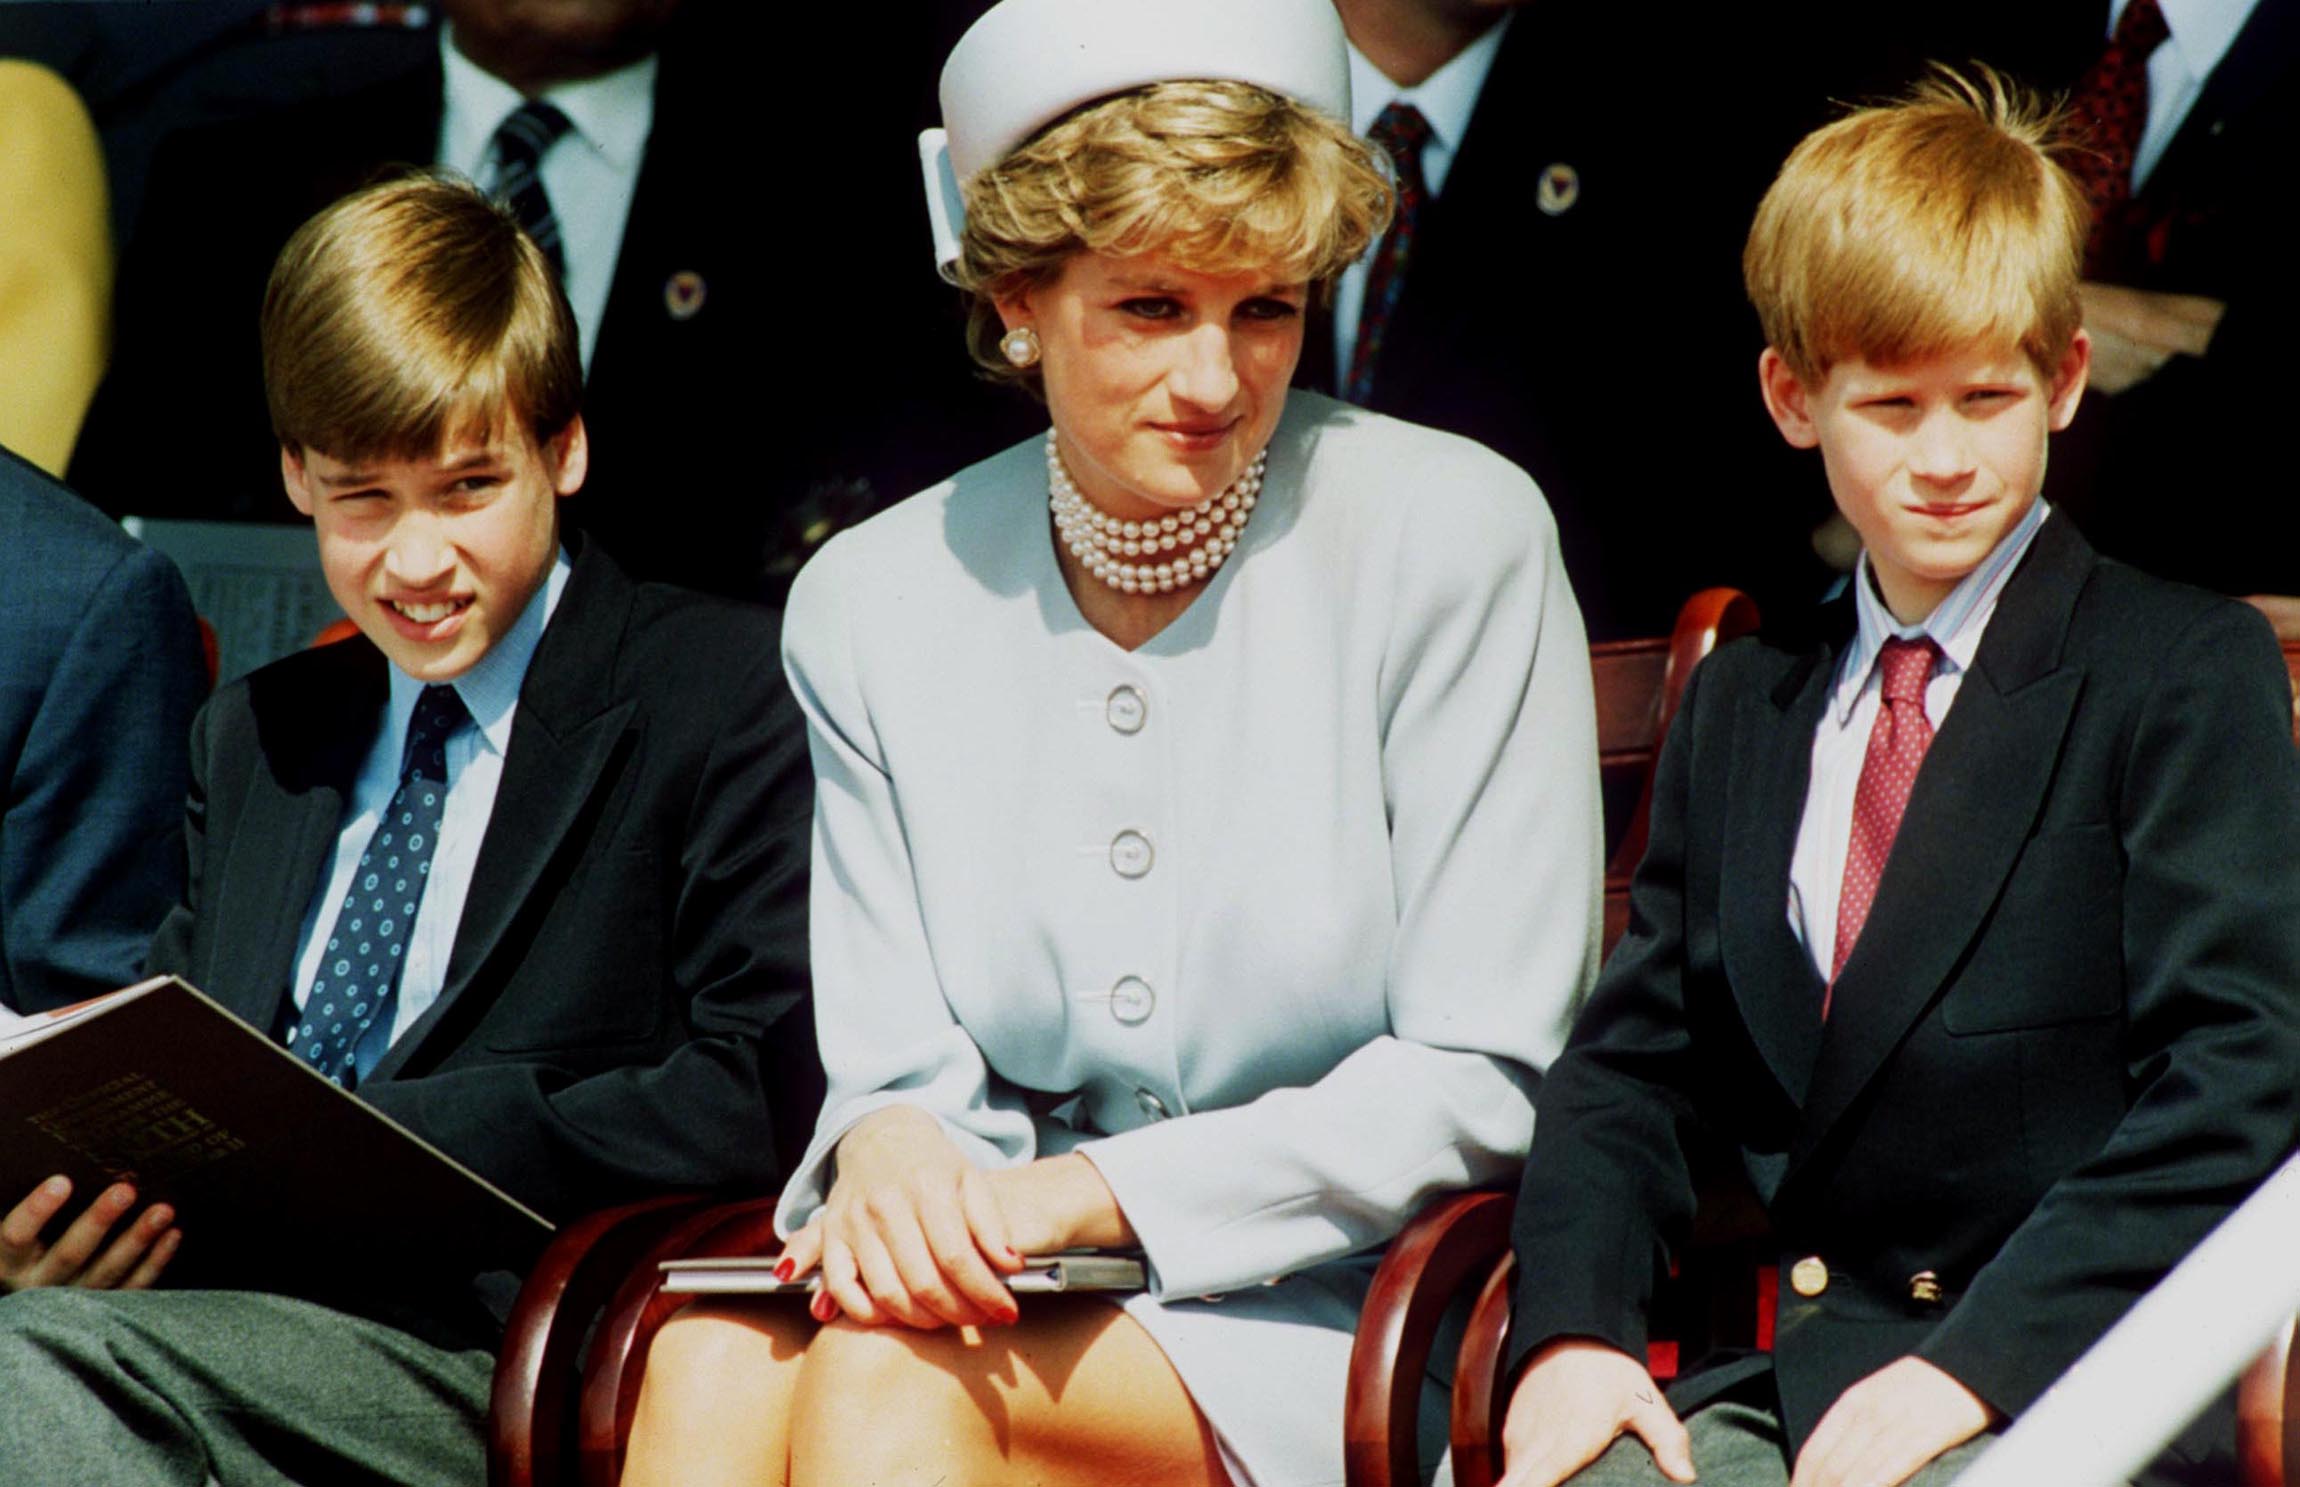 La défunte Princesse Diana, avec le Prince William et le Prince Harry lors d'un événement officiel | Photo : Getty Images